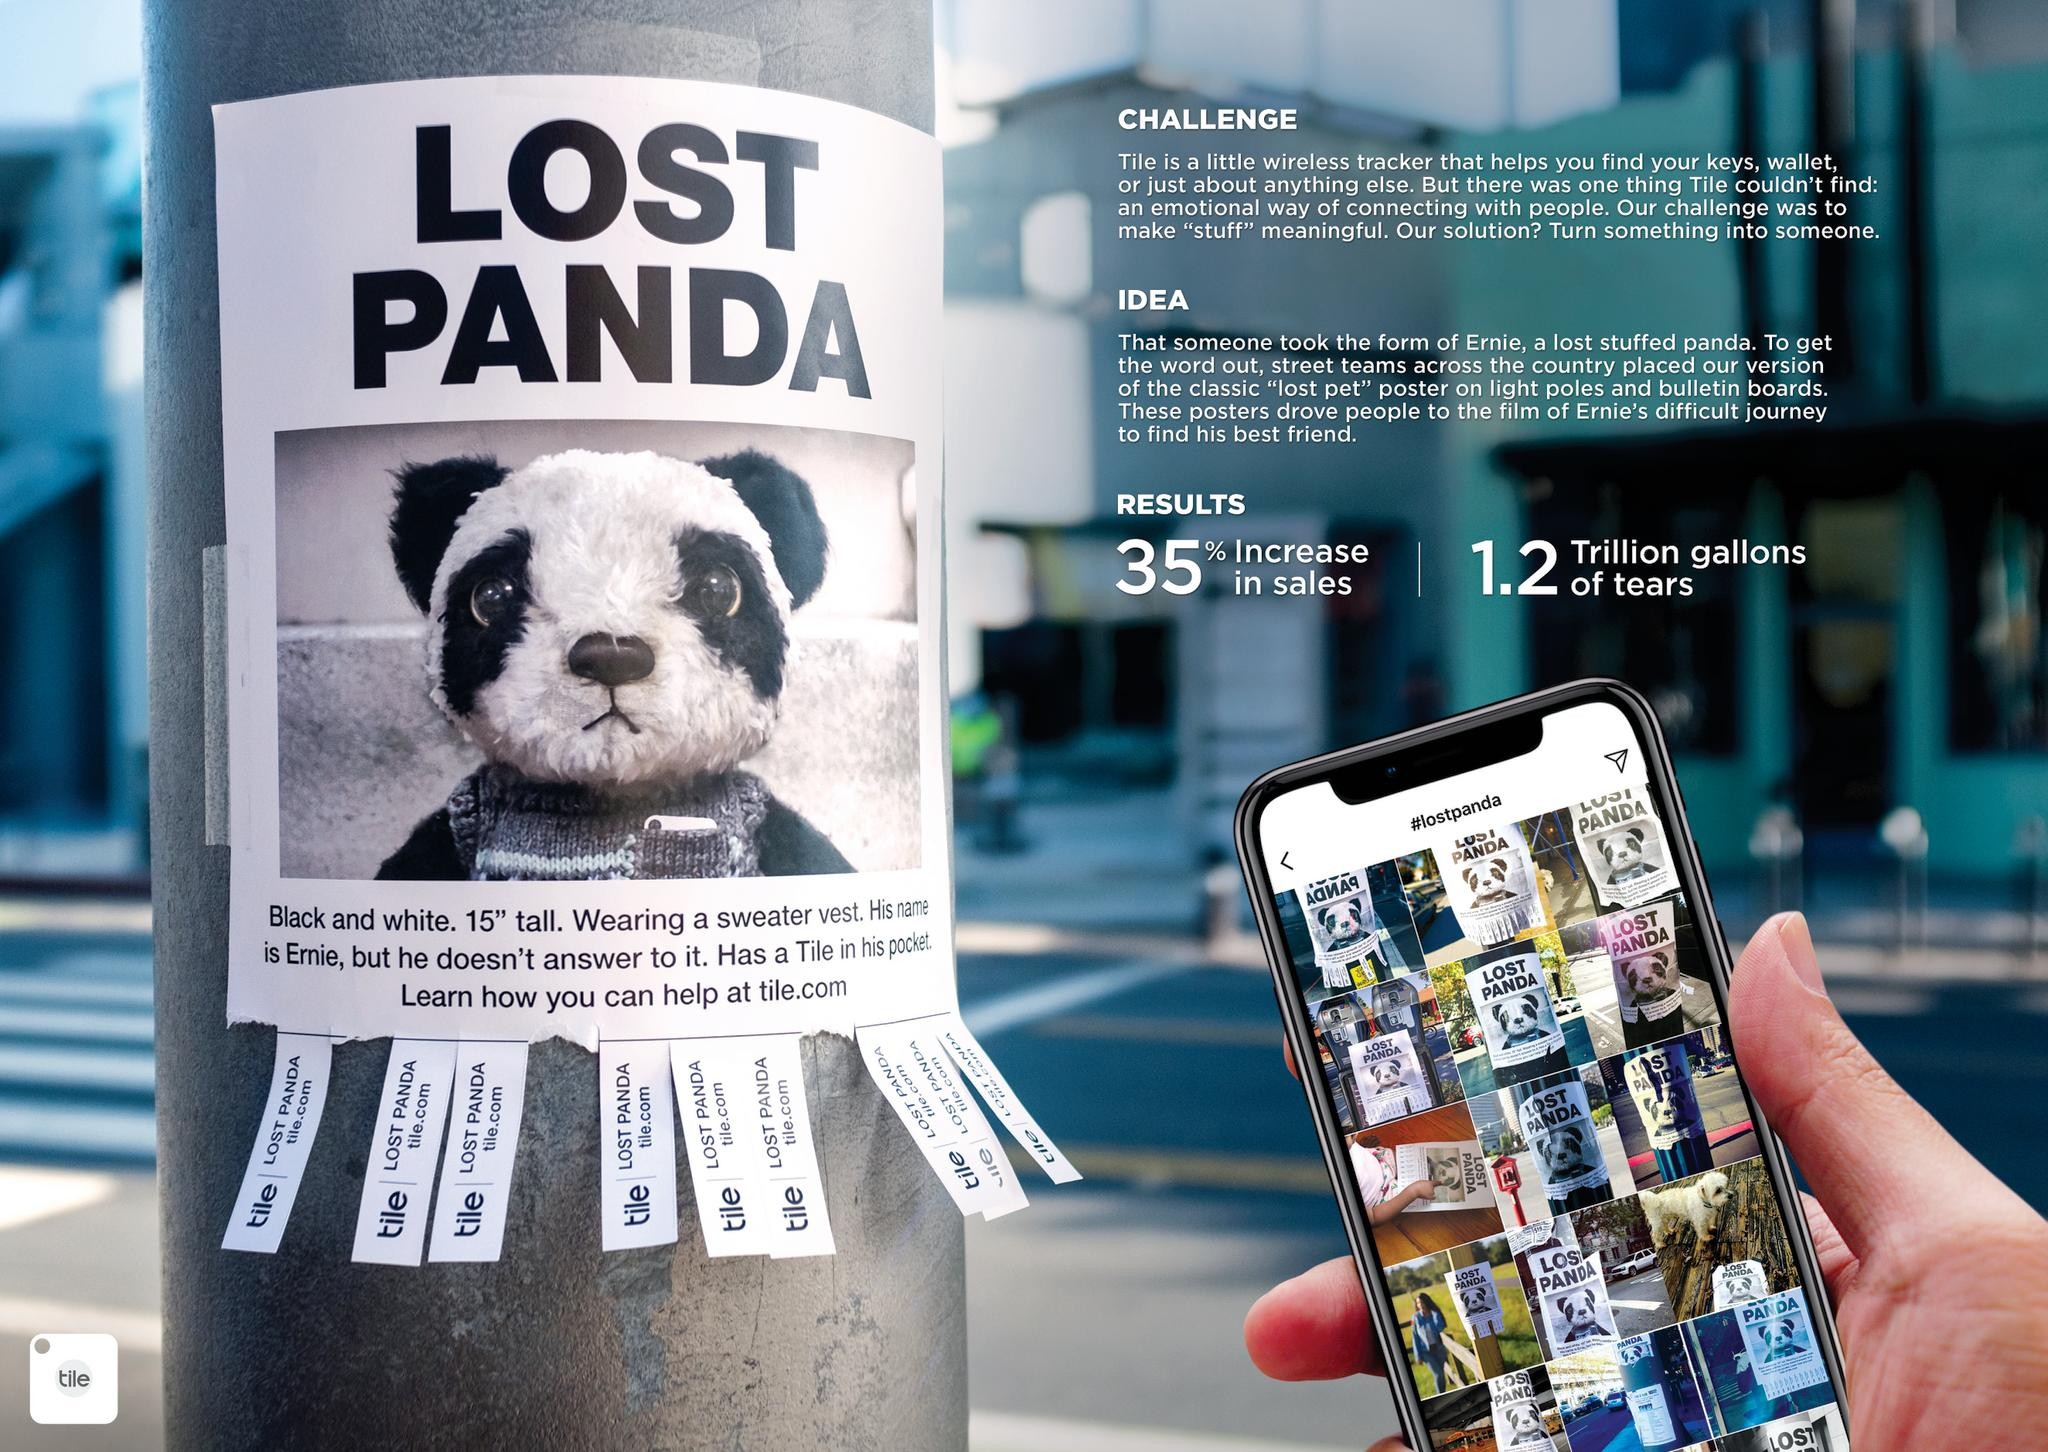 Lost Panda | Together We Find